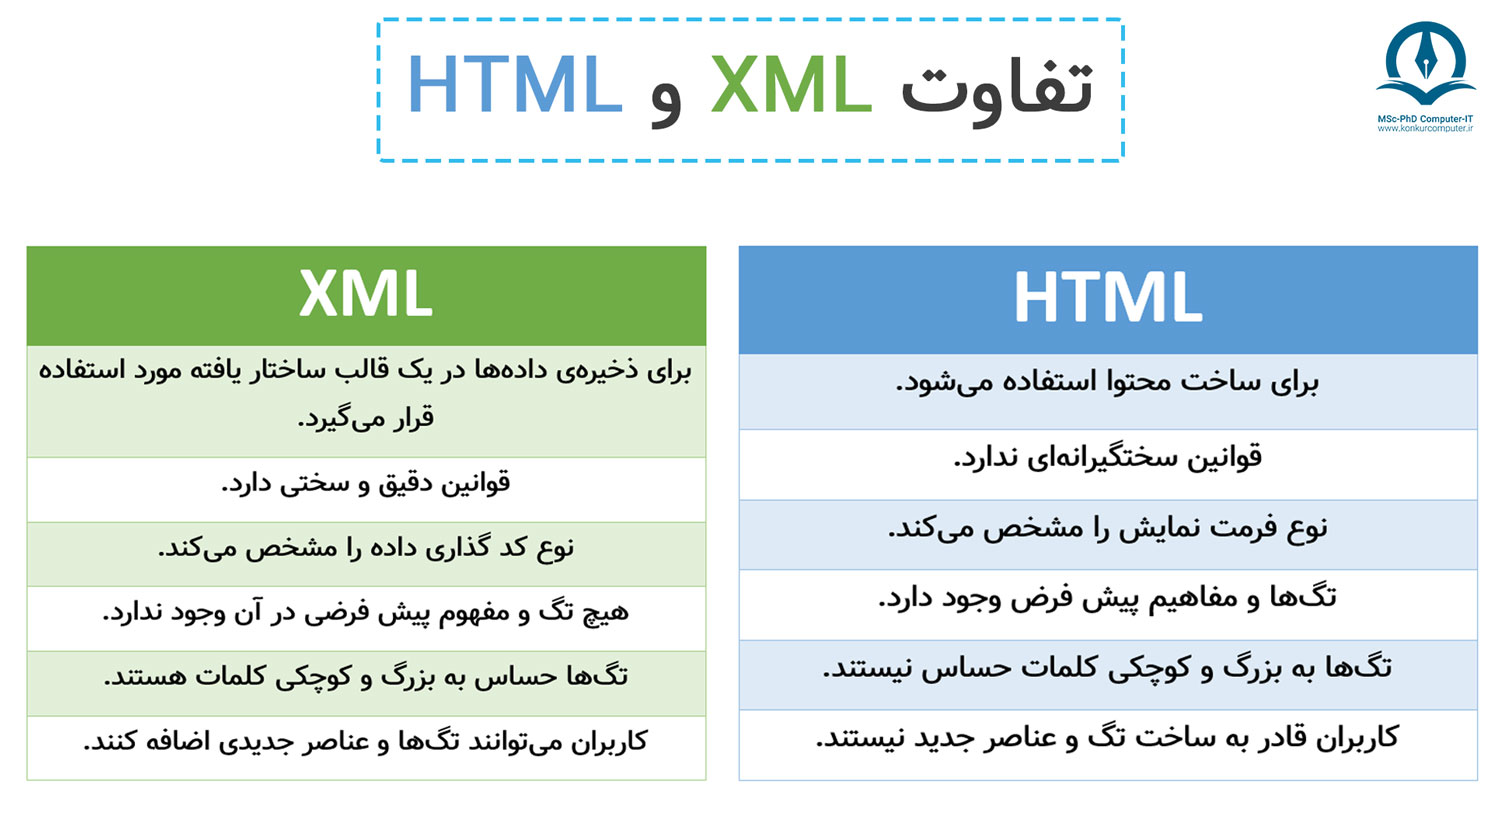 در این تصویر تفاوت HTML و XML نشان داده شده است.